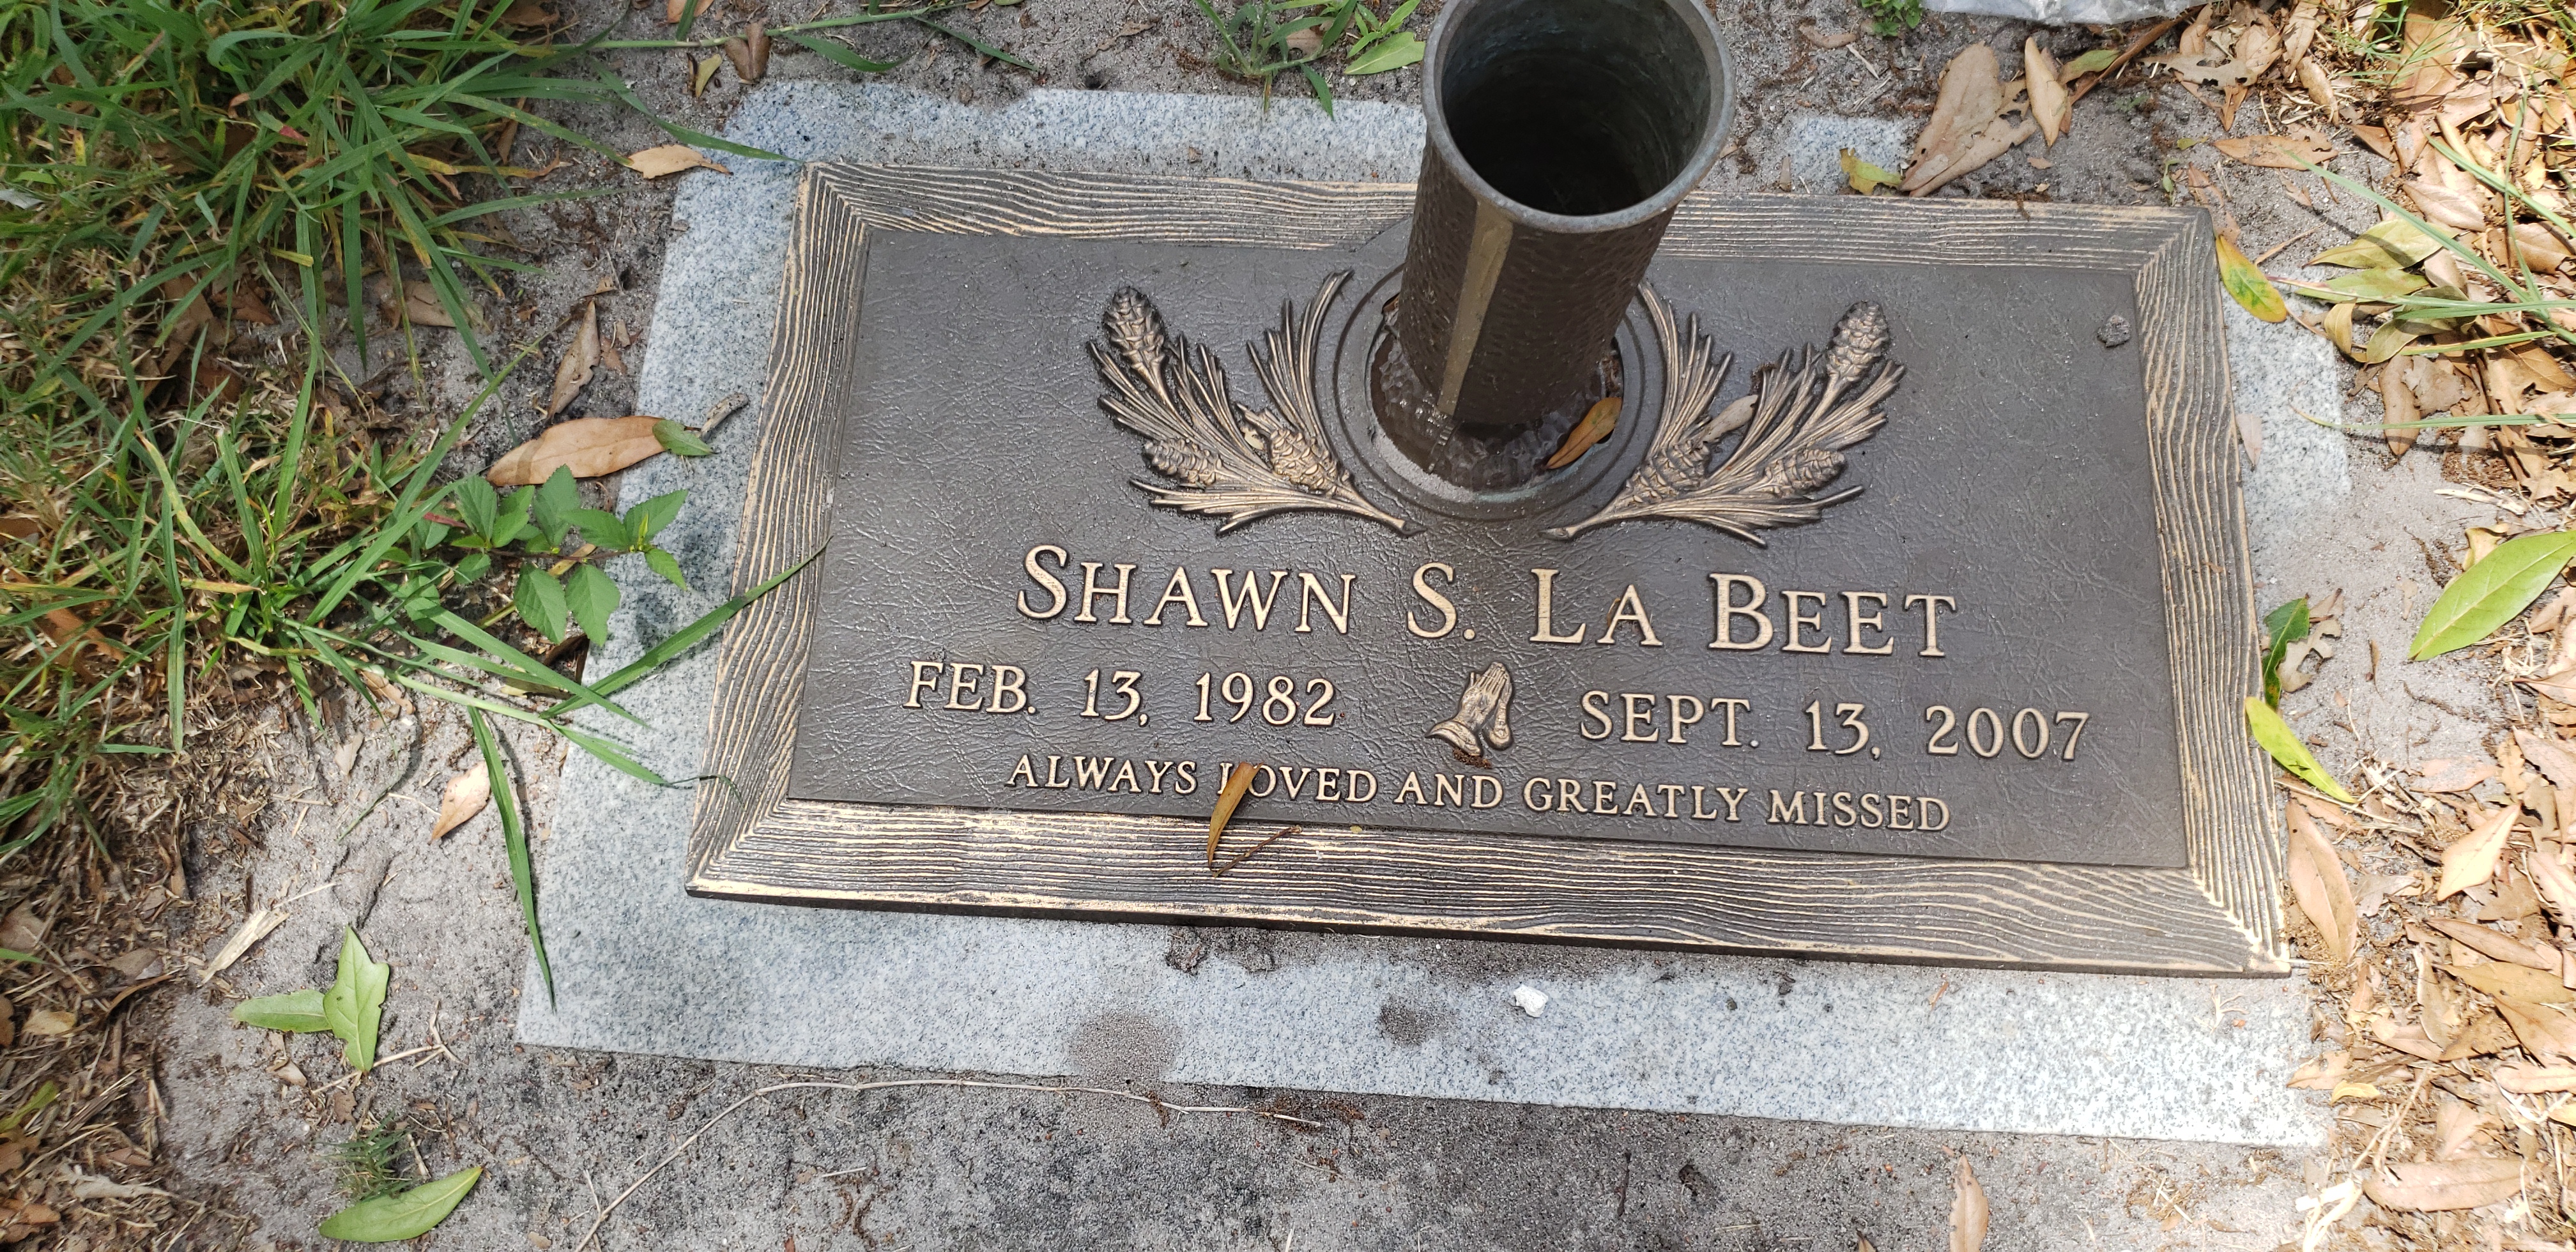 Shawn S La Beet